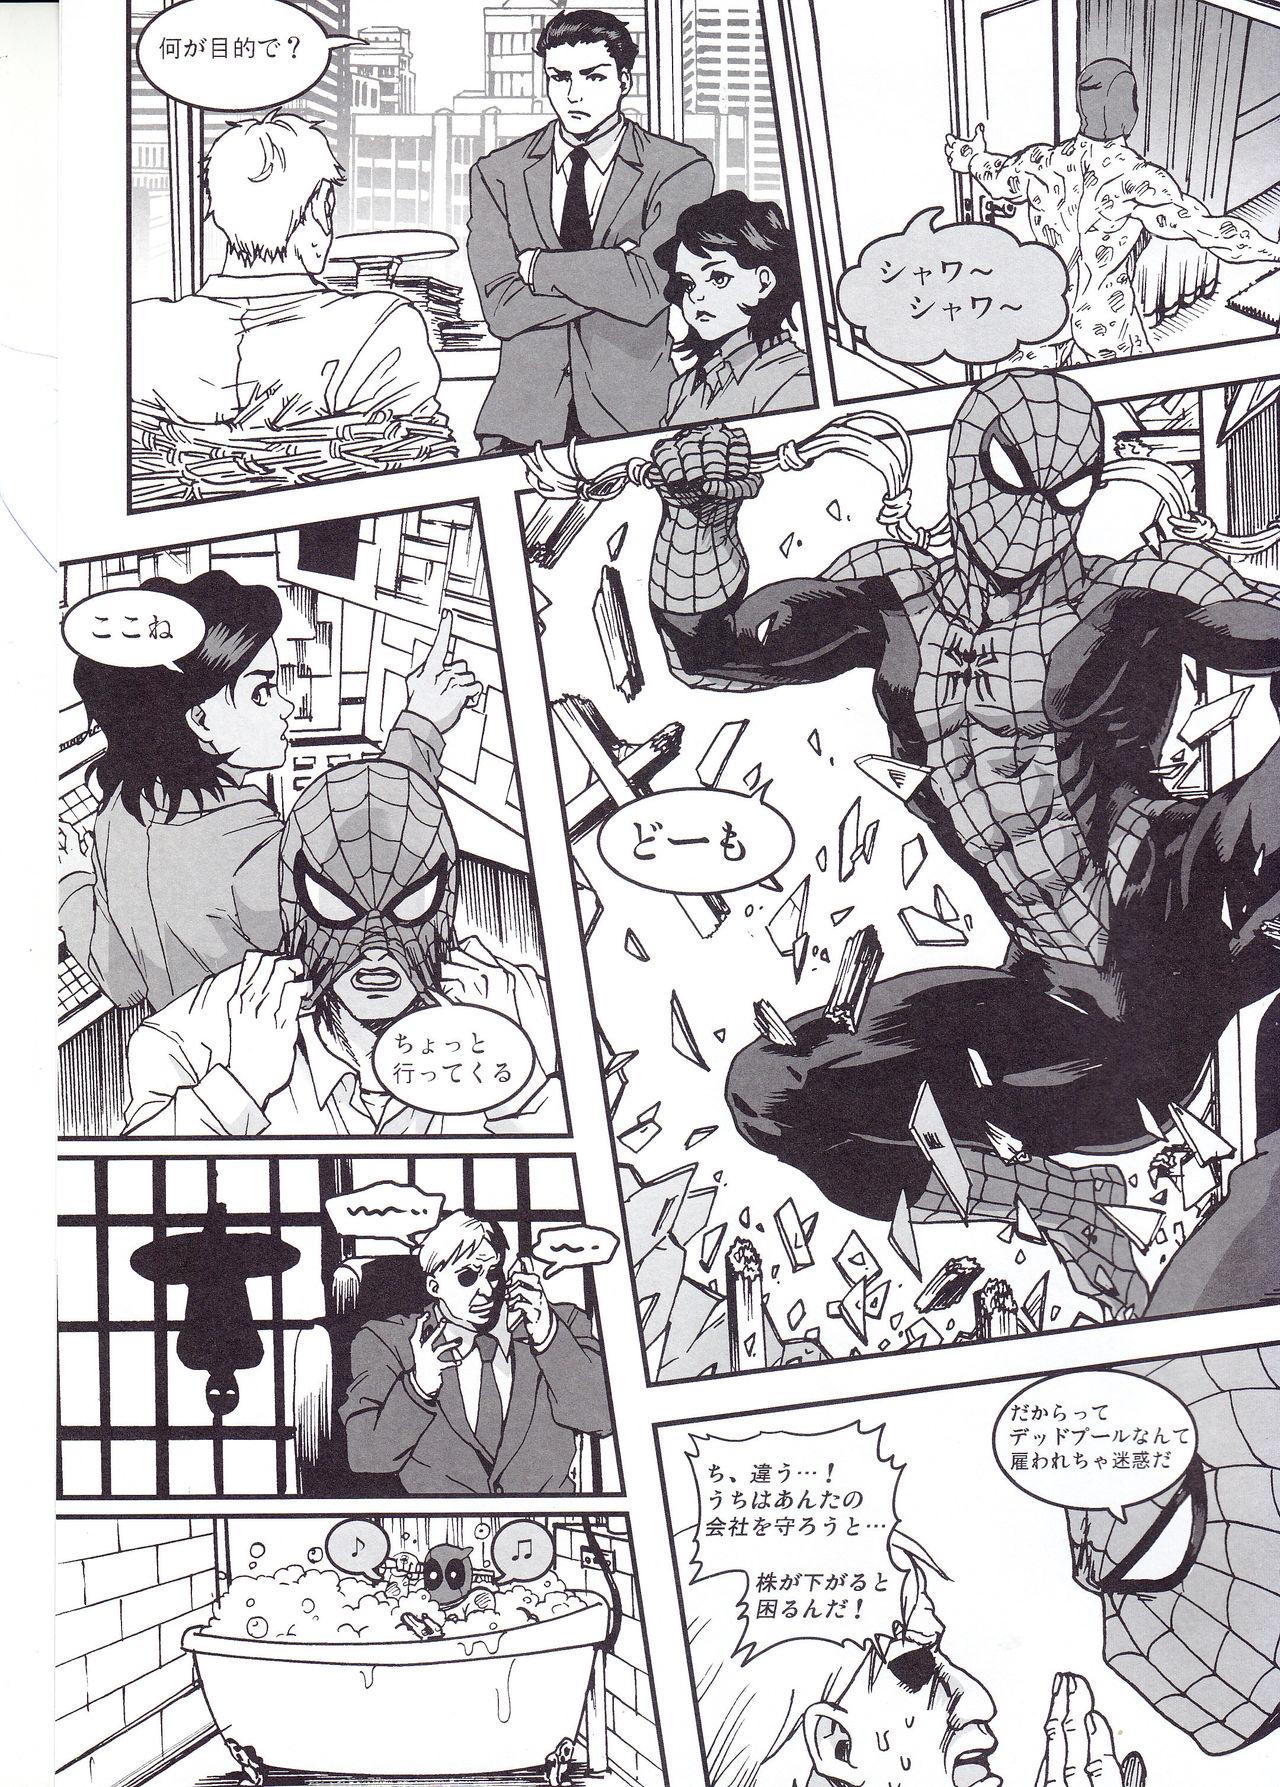 Spooning THREE DAYS 2-3 - Spider man Deadpool Vadia - Page 3